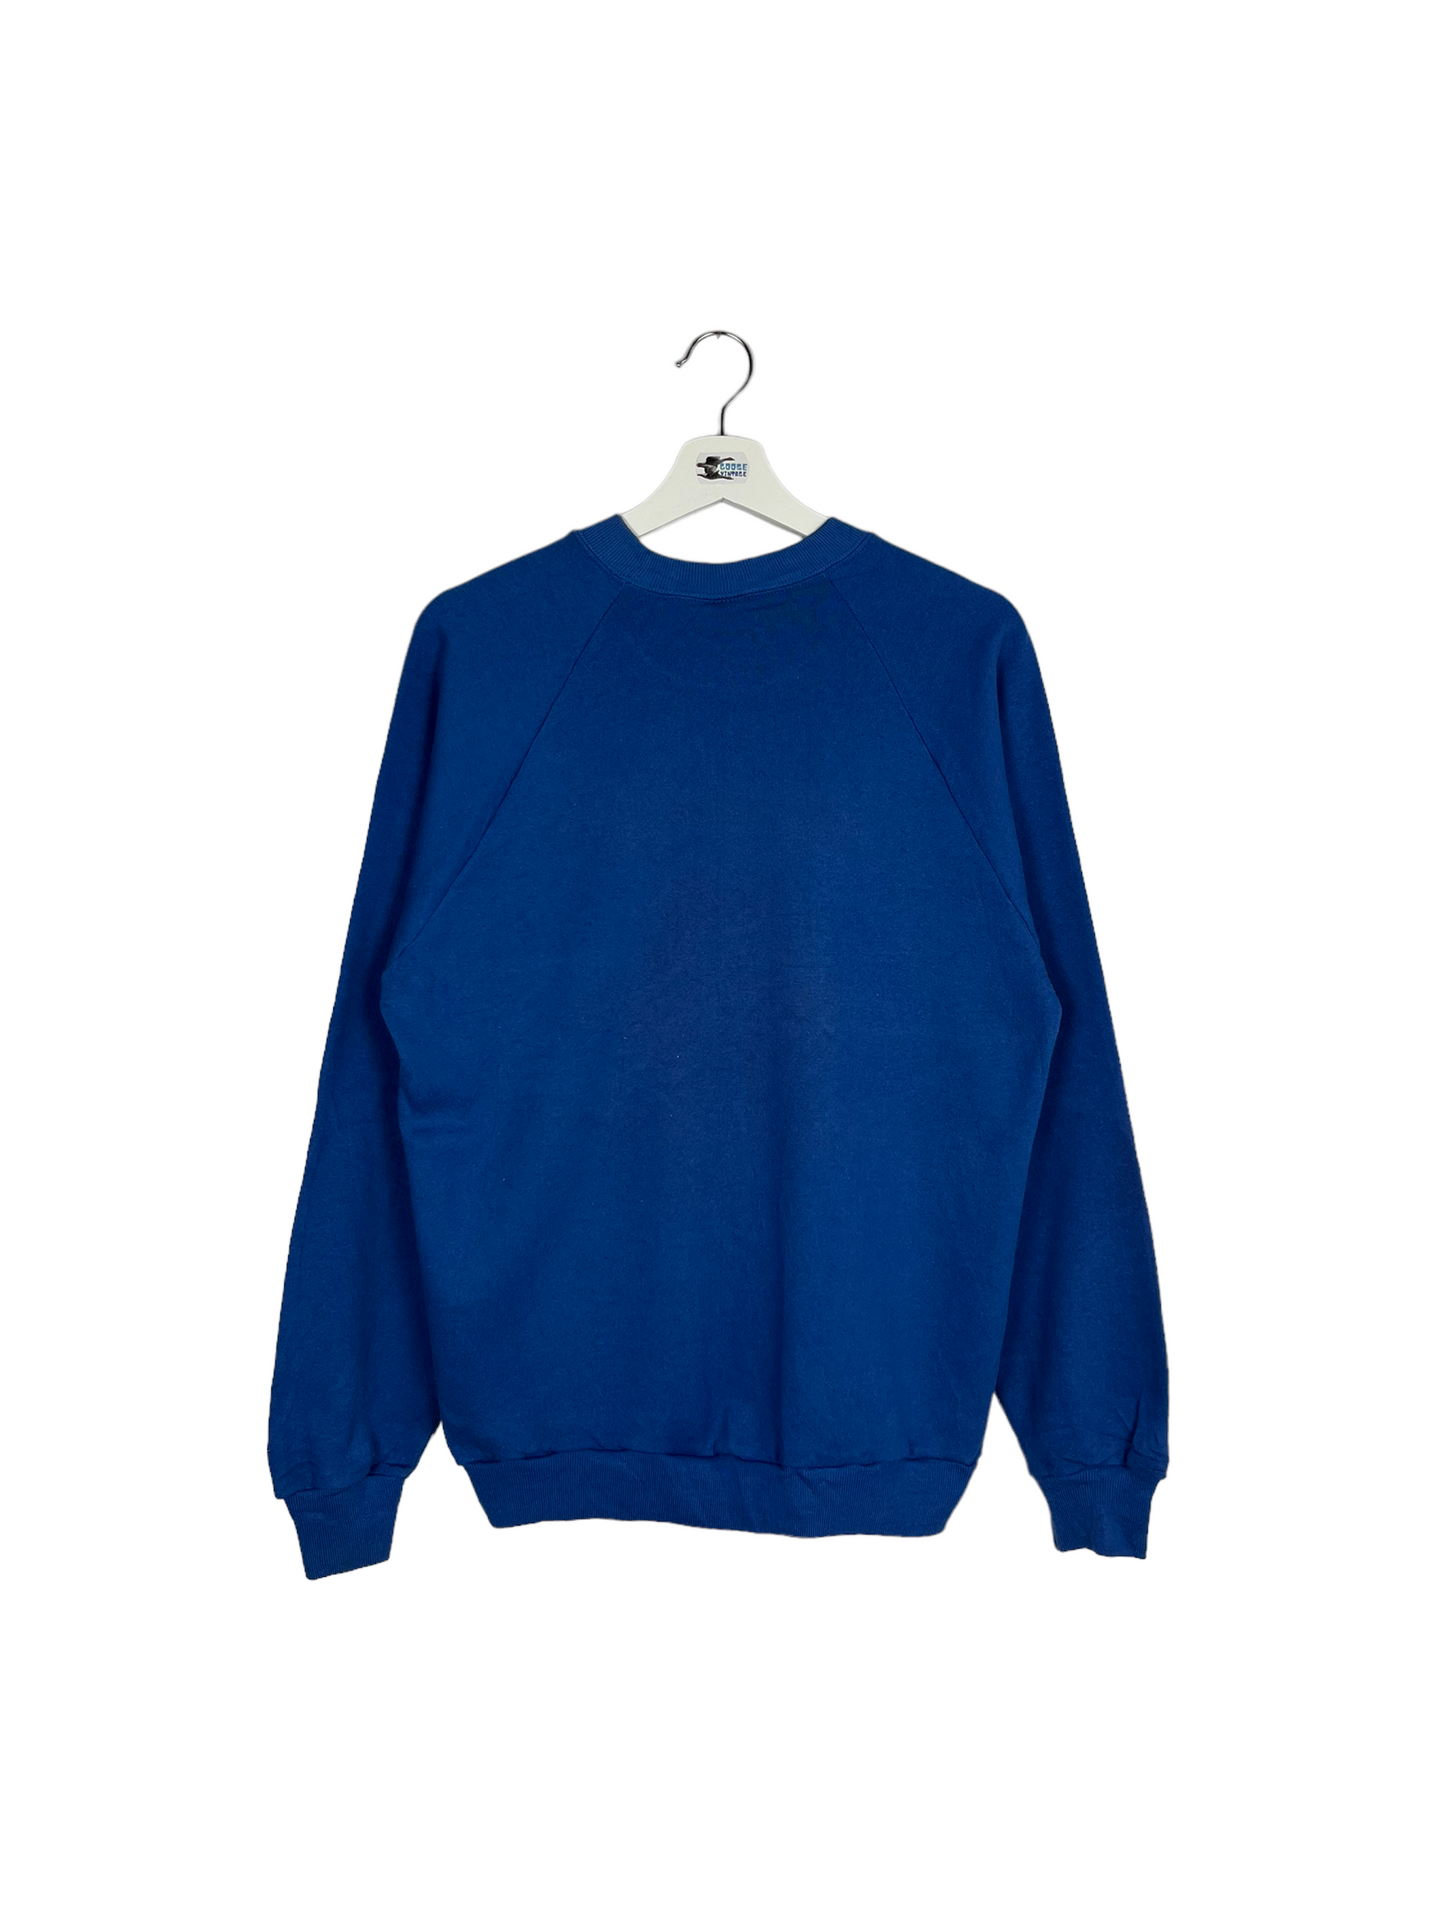 Vintage 80’s Minnesota Raglan Sweatshirt - Large